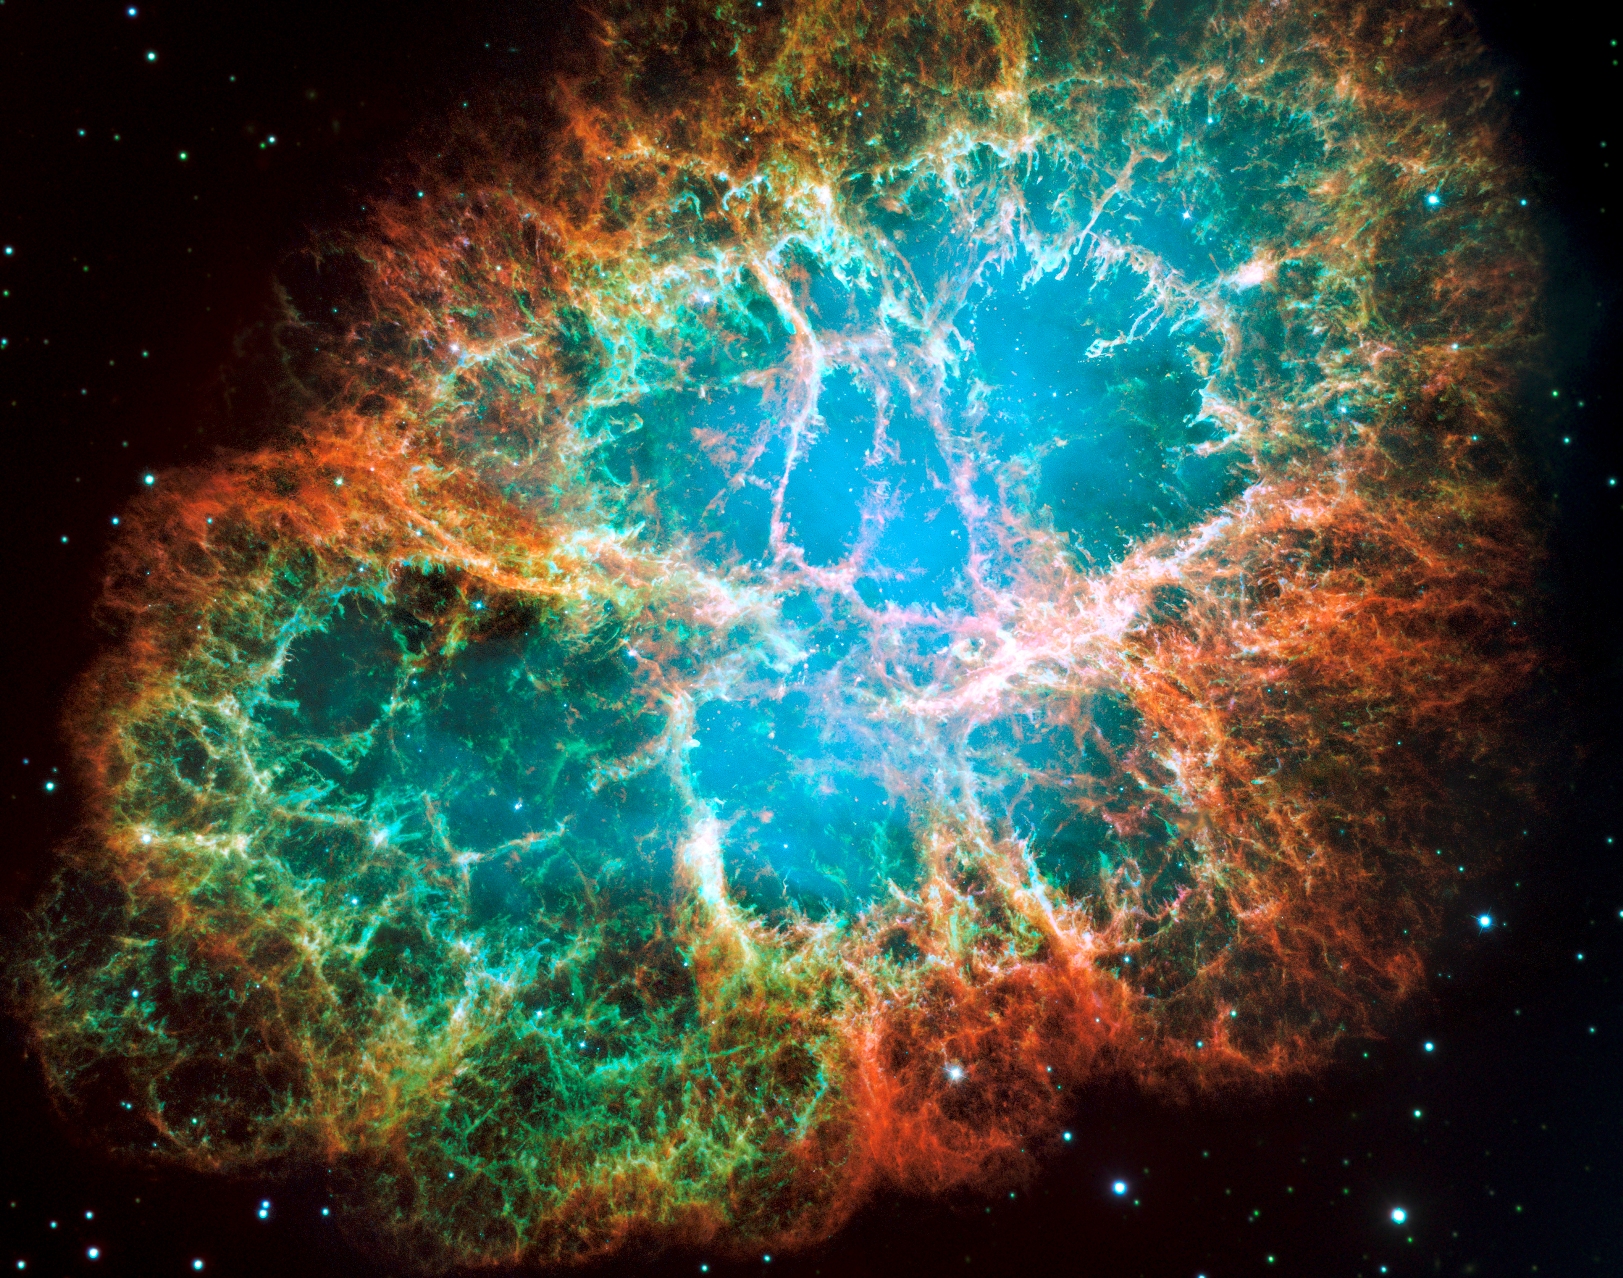 La nébuleuse du crabe, un nuage de débris en expansion de six années-lumière de diamètre provenant d'une explosion de supernova, héberge une étoile à neutrons tournant sur elle-même 30 fois par seconde  et qui fait partie des pulsars les plus brillants du ciel aux longueurs d'onde des rayons X et radio. Cette composition d'images du télescope spatial Hubble révèle différents gaz expulsés lors de l'explosion: le bleu révèle l'oxygène neutre, le vert montre le soufre mono-ionisé et le rouge indique l'oxygène doublement ionisé. © Nasa, ESA, J. Hester et A. Loll (Arizona State University)